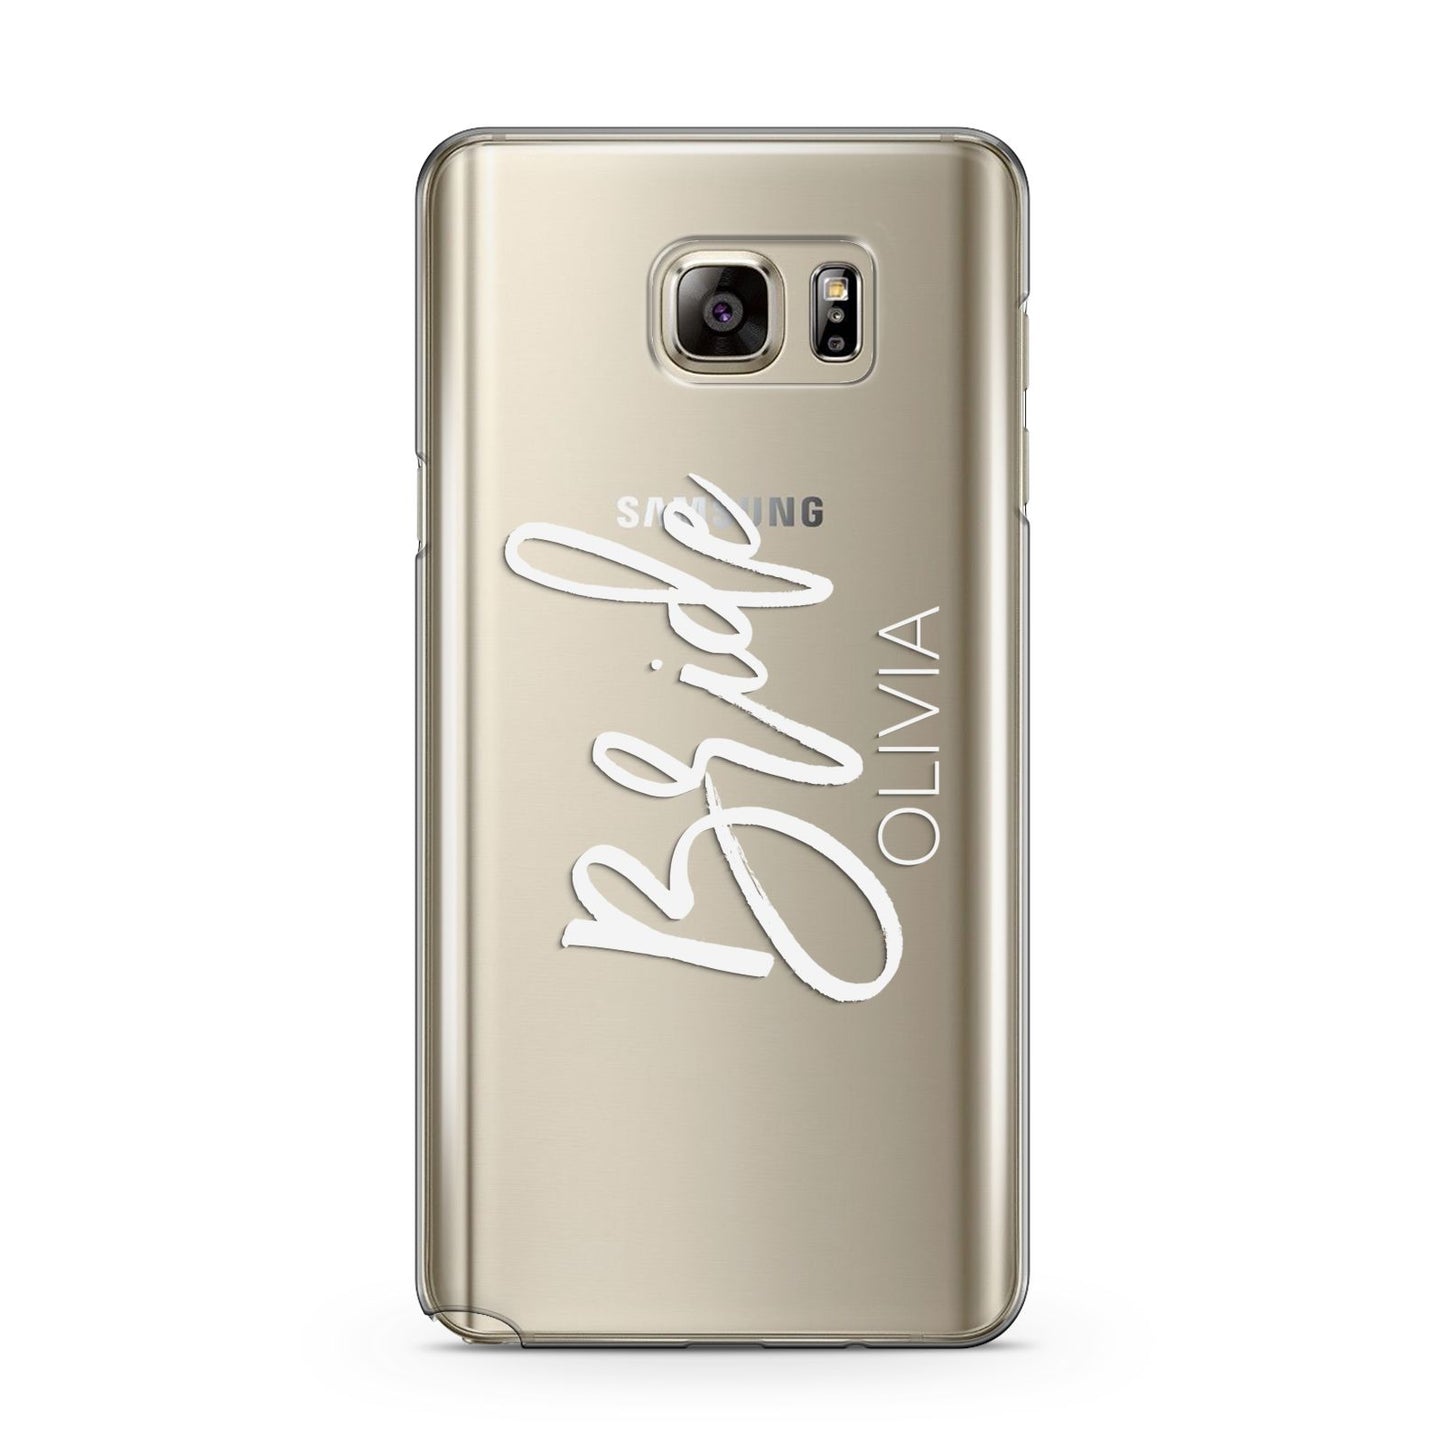 Personalised Bride Samsung Galaxy Note 5 Case